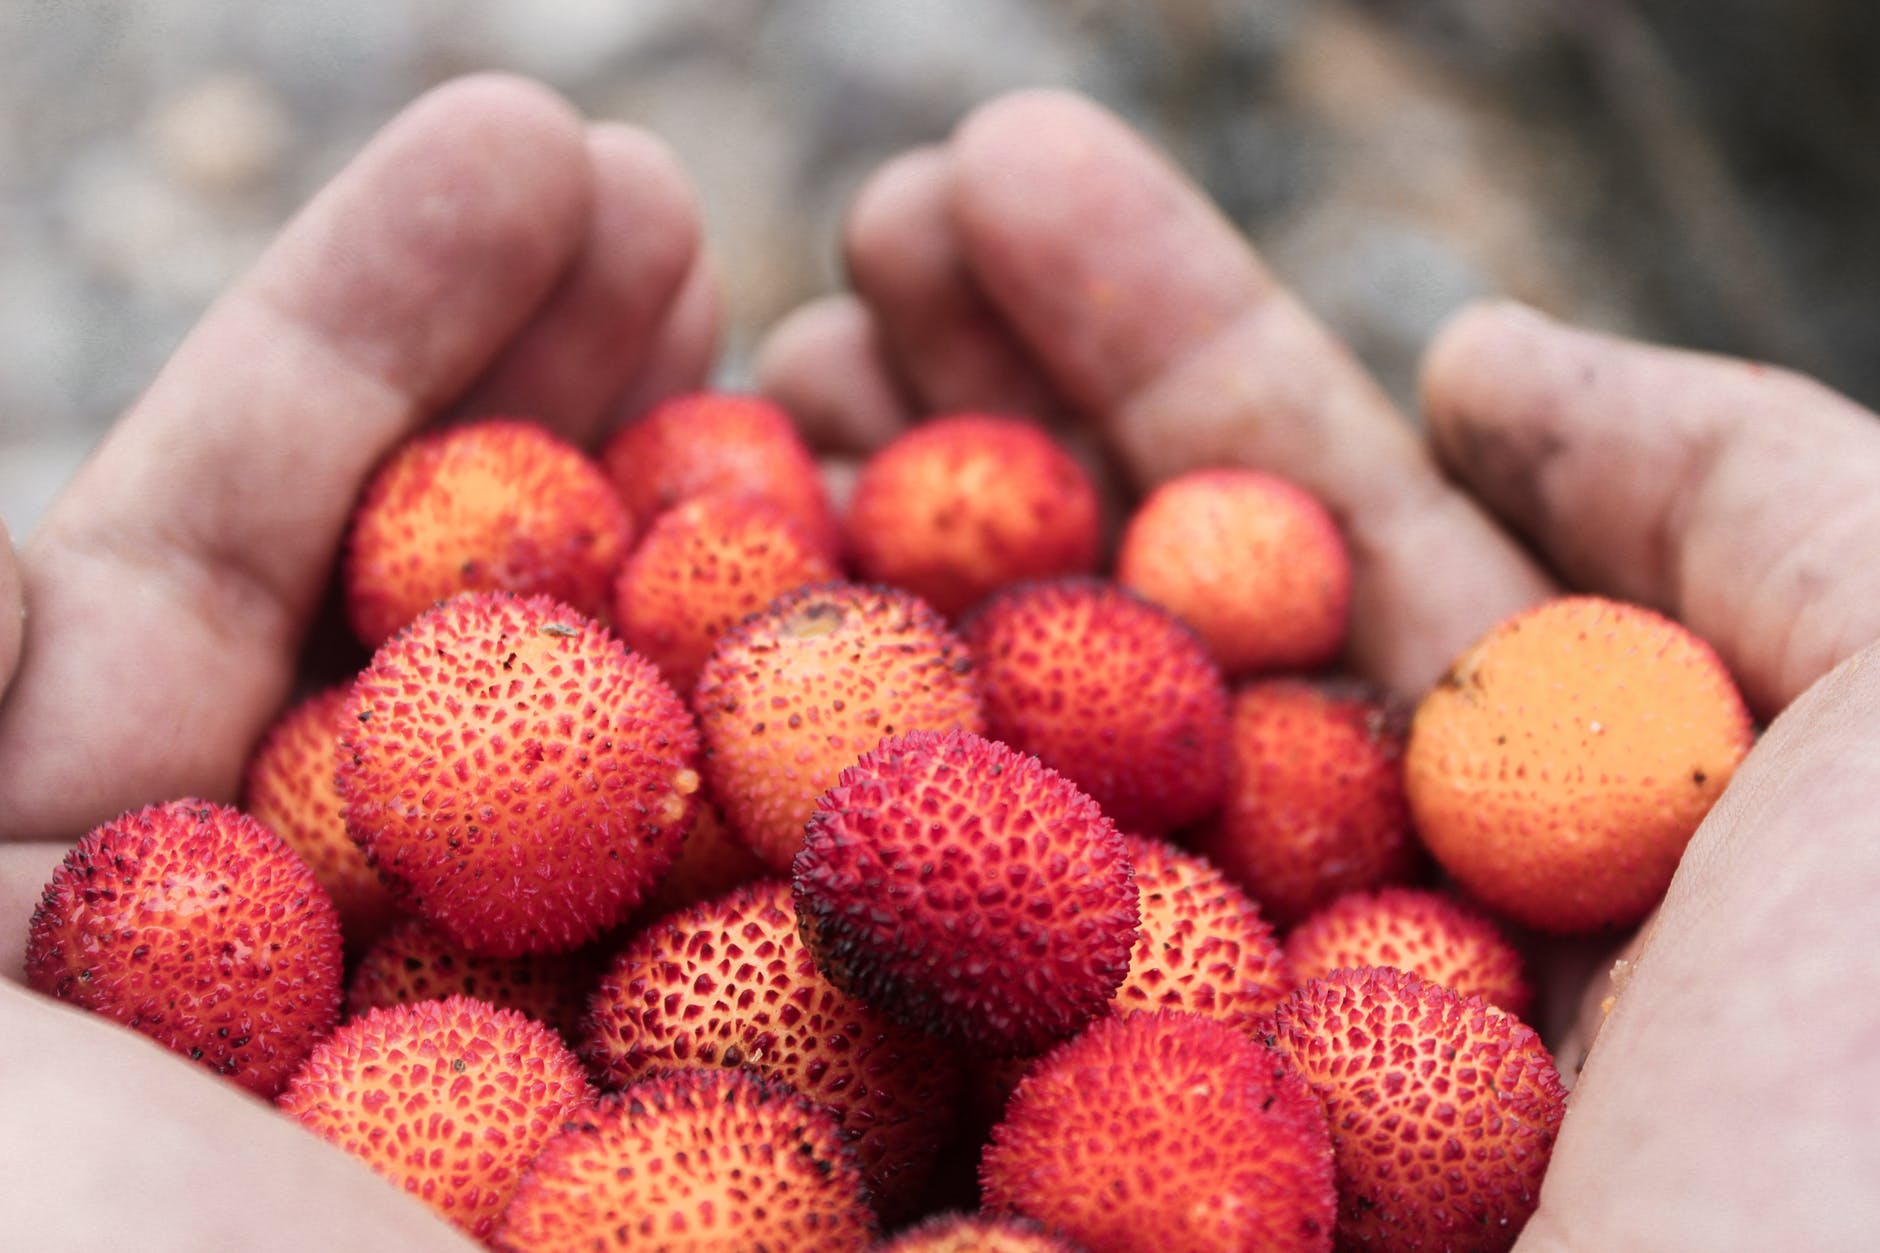 Plantando lichia: Aprenda agora como cultivar essa fruta tão inusitada